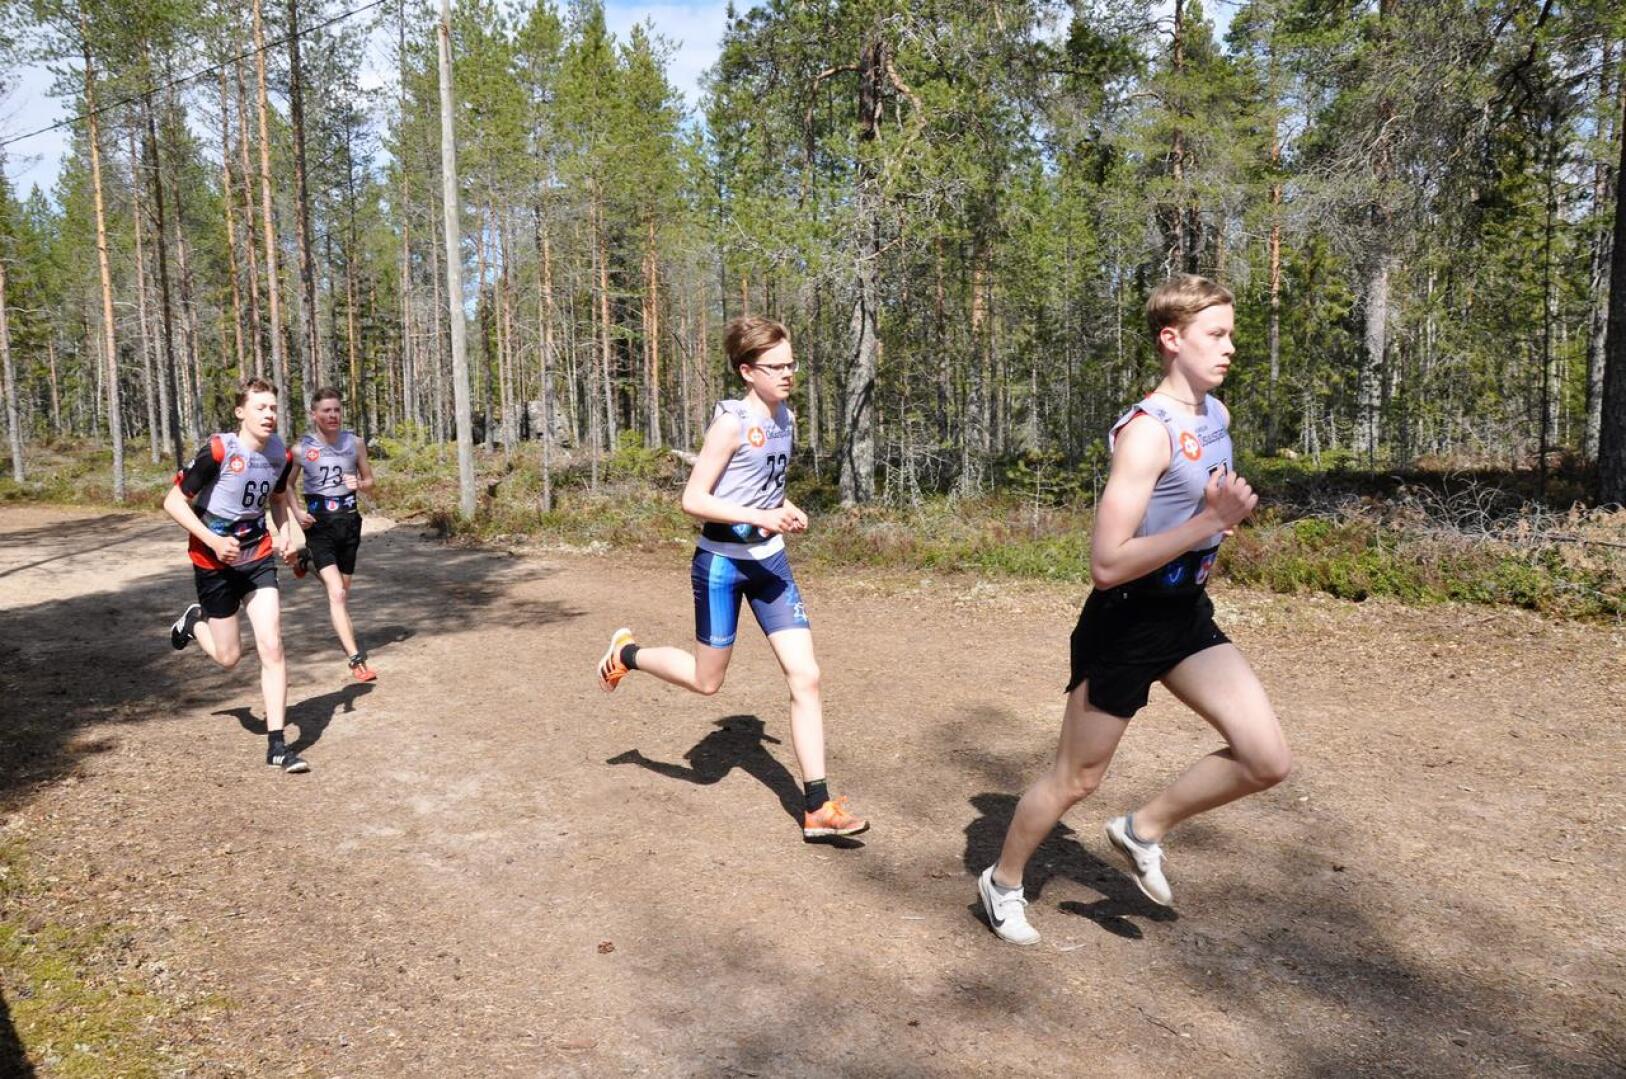 Kasper Björkbacka vetää 17- ja 15-vuotiaiden juoksua ensimmäisen kierroksen jälkeen. Seuraavina juoksevat KT:n Santeri Kallio, VetU:n Elias Björkbacka ja KP-V:n Sisu Peltoniemi. 